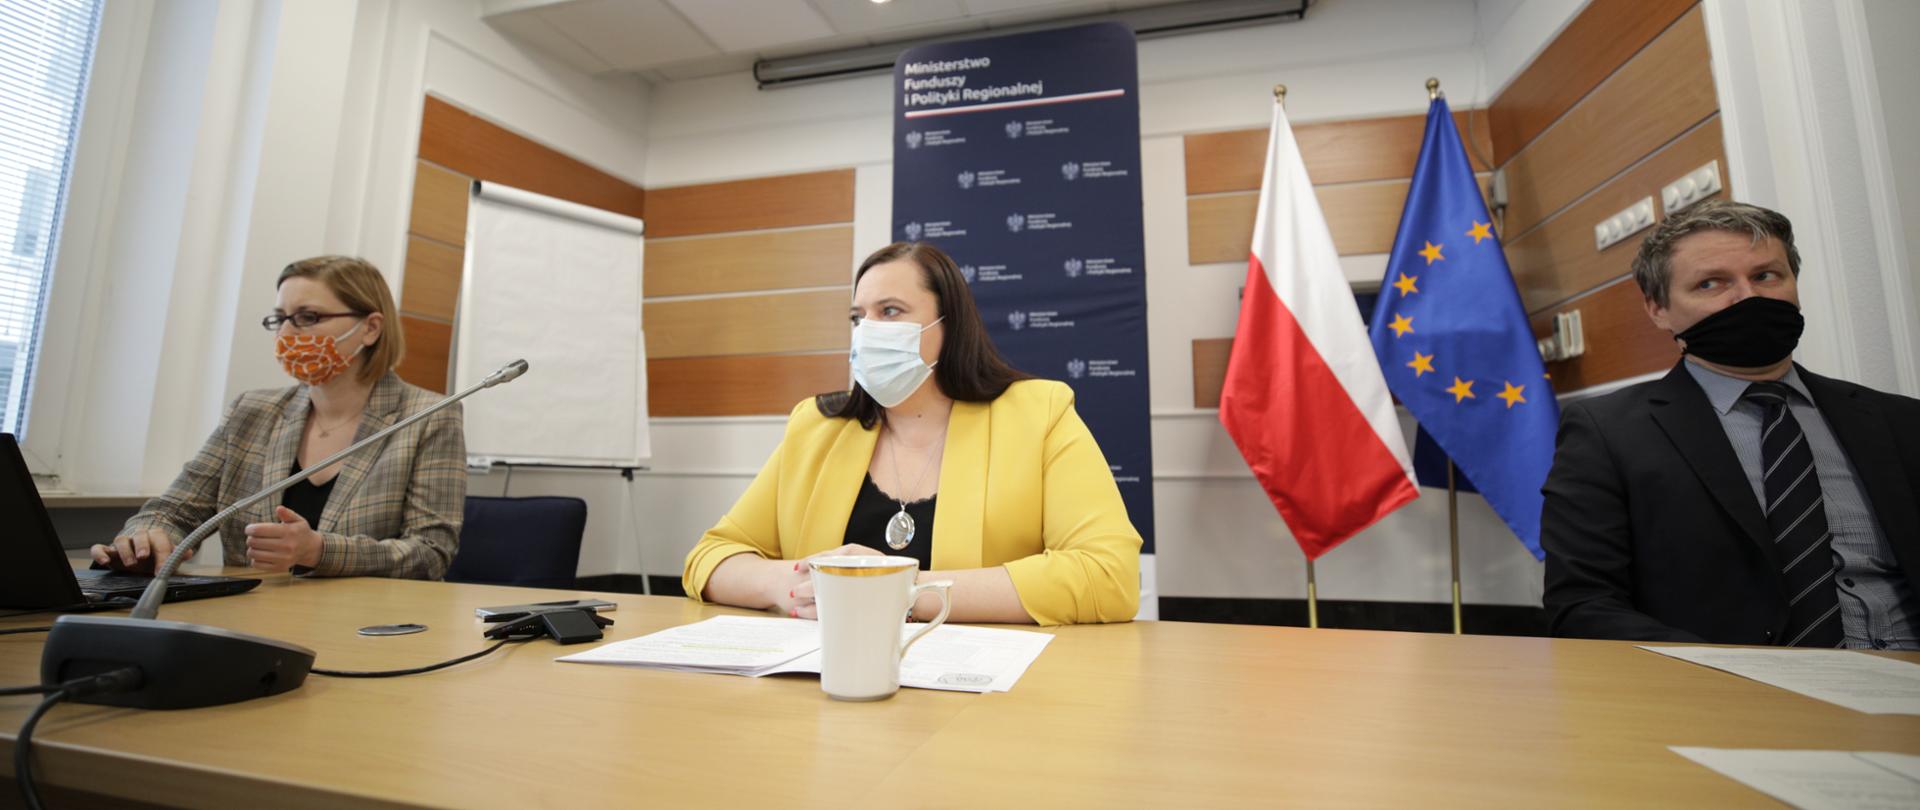 W sali konferencyjnej przy długim stole siedzą trzy osoby. Pośrodku wiceminister Małgorzata Jarosińska-Jedynak przed mikrofonem. Osoba z lewej strony obsługuje tablet. Z tyłu flagi PL i UE oraz rollup.